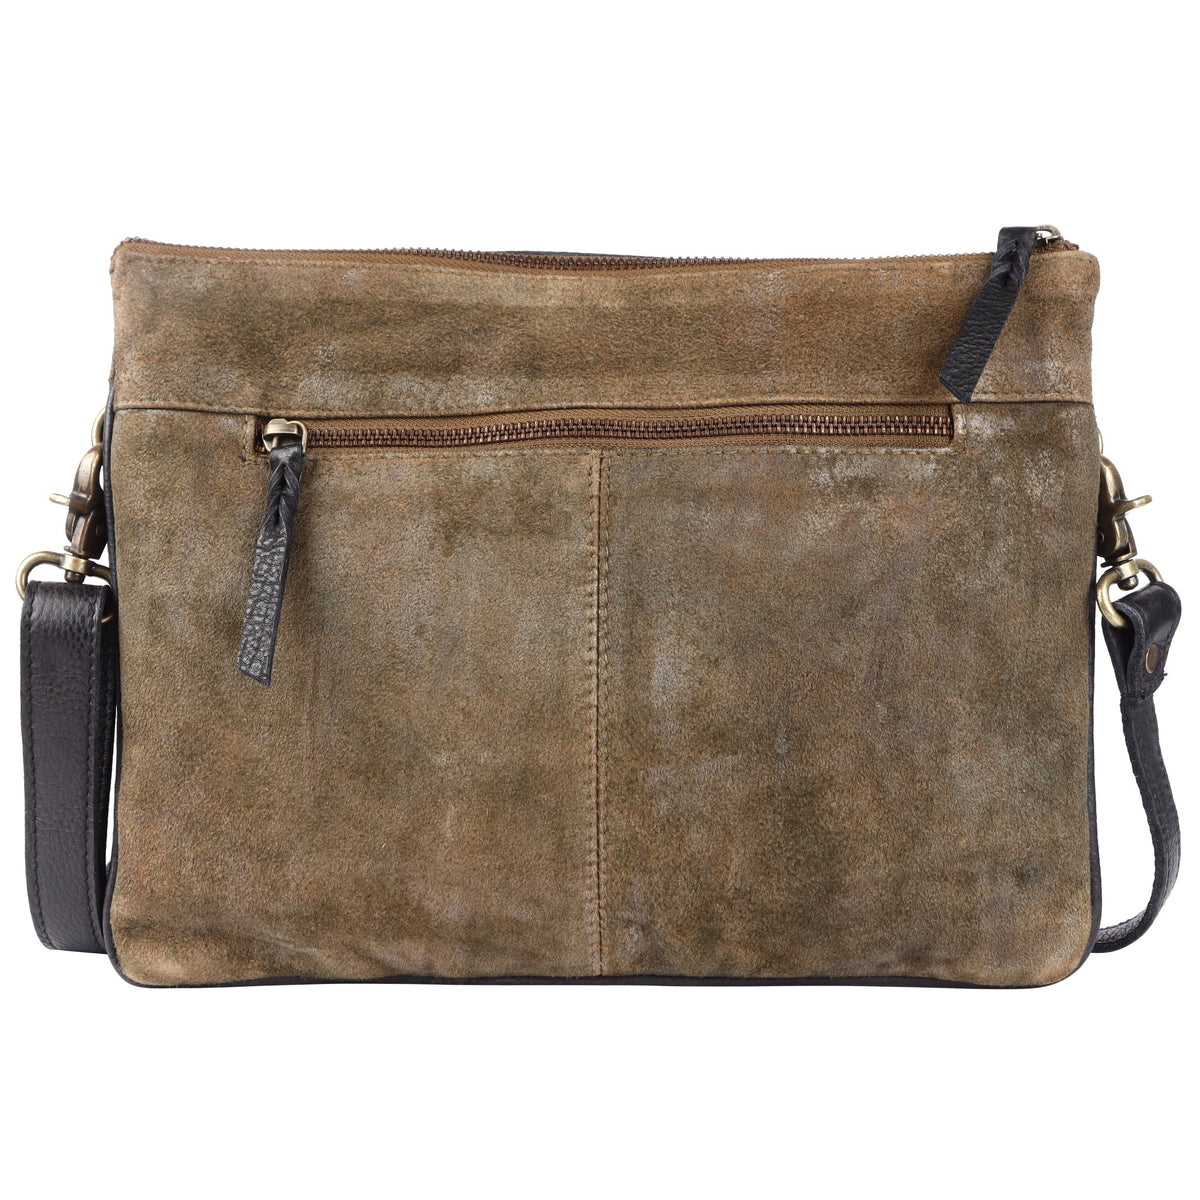 Gypsy Leather Bag